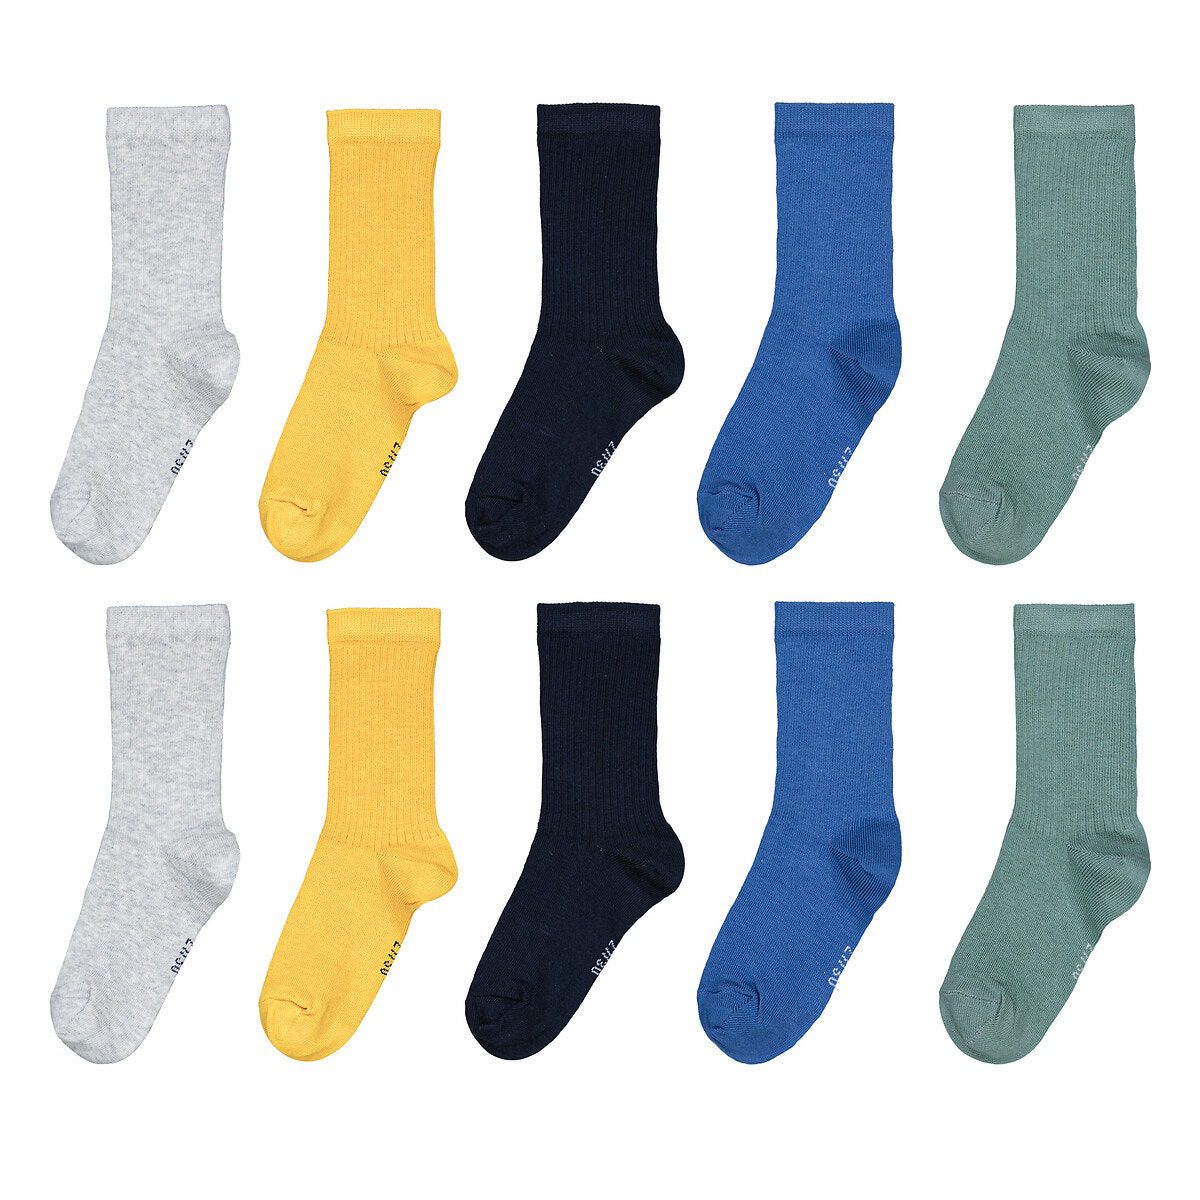 Σετ 10 ζευγάρια ριμπ κάλτσες Διαφορα Χρωματα